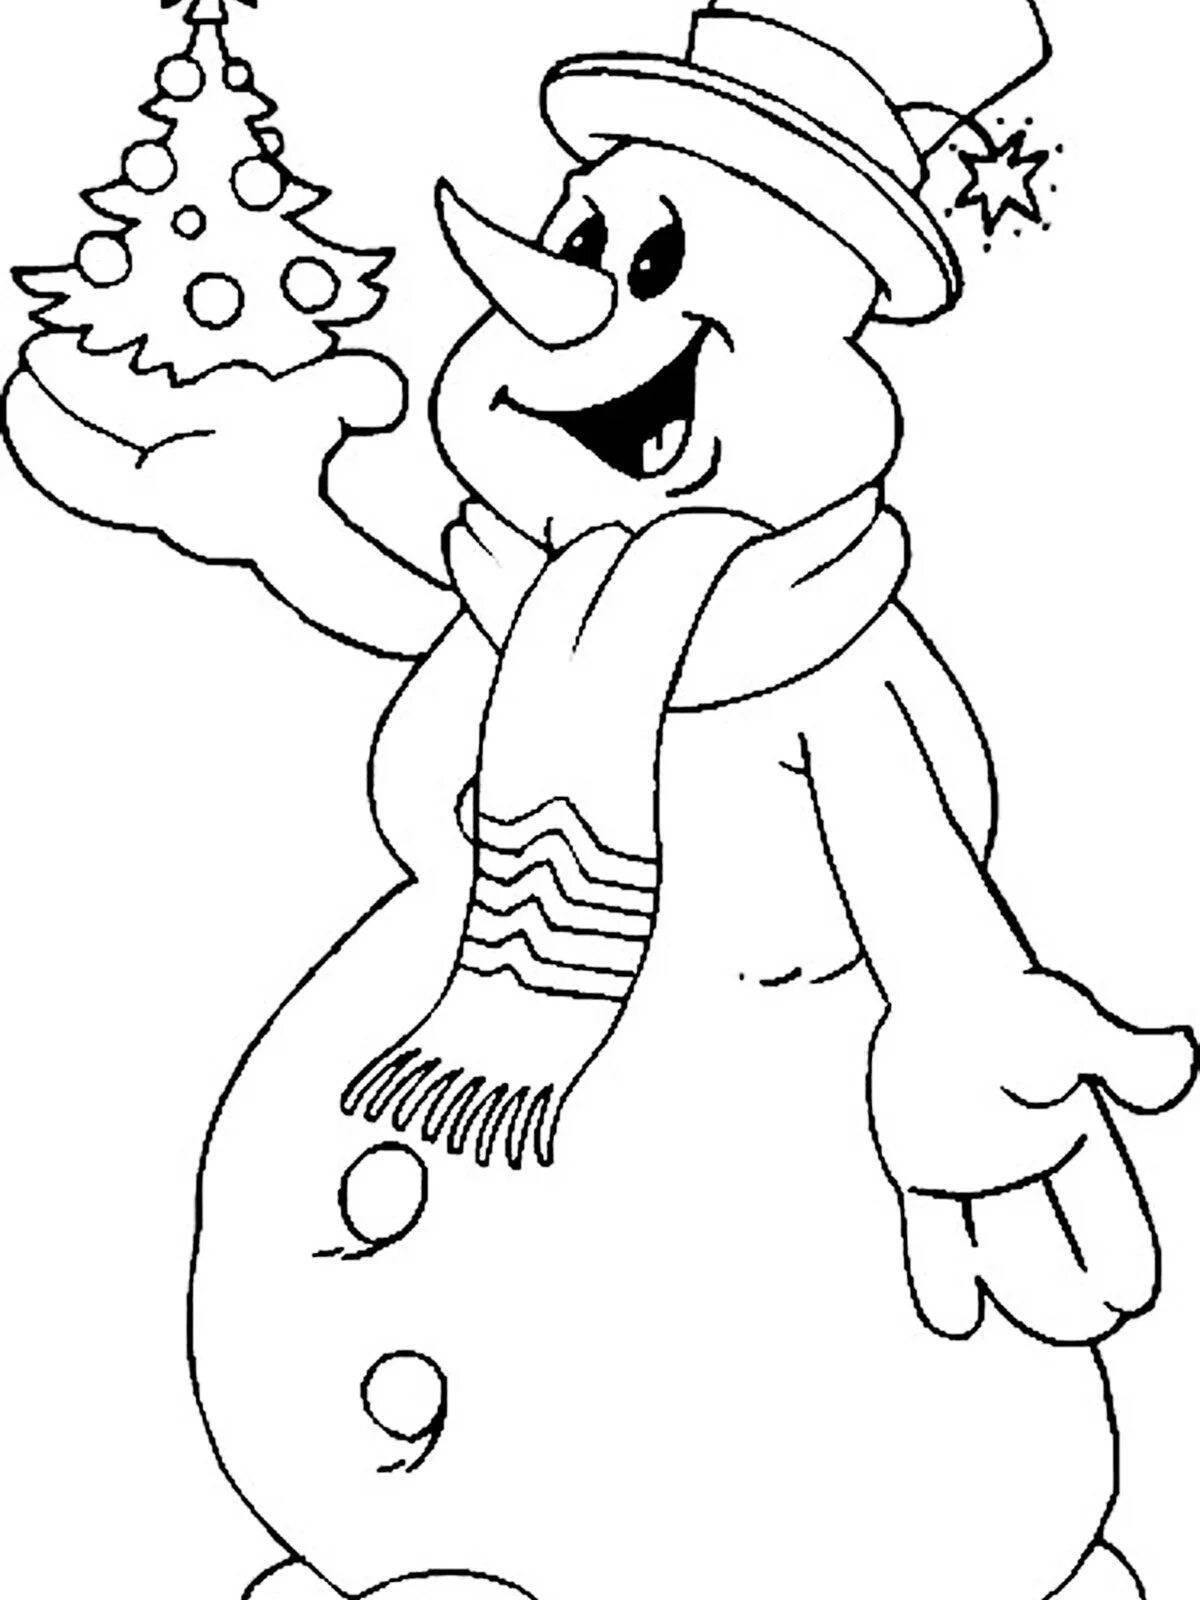 100 000 изображений по запросу Снеговик раскраска доступны в рамках роялти-фри лицензии